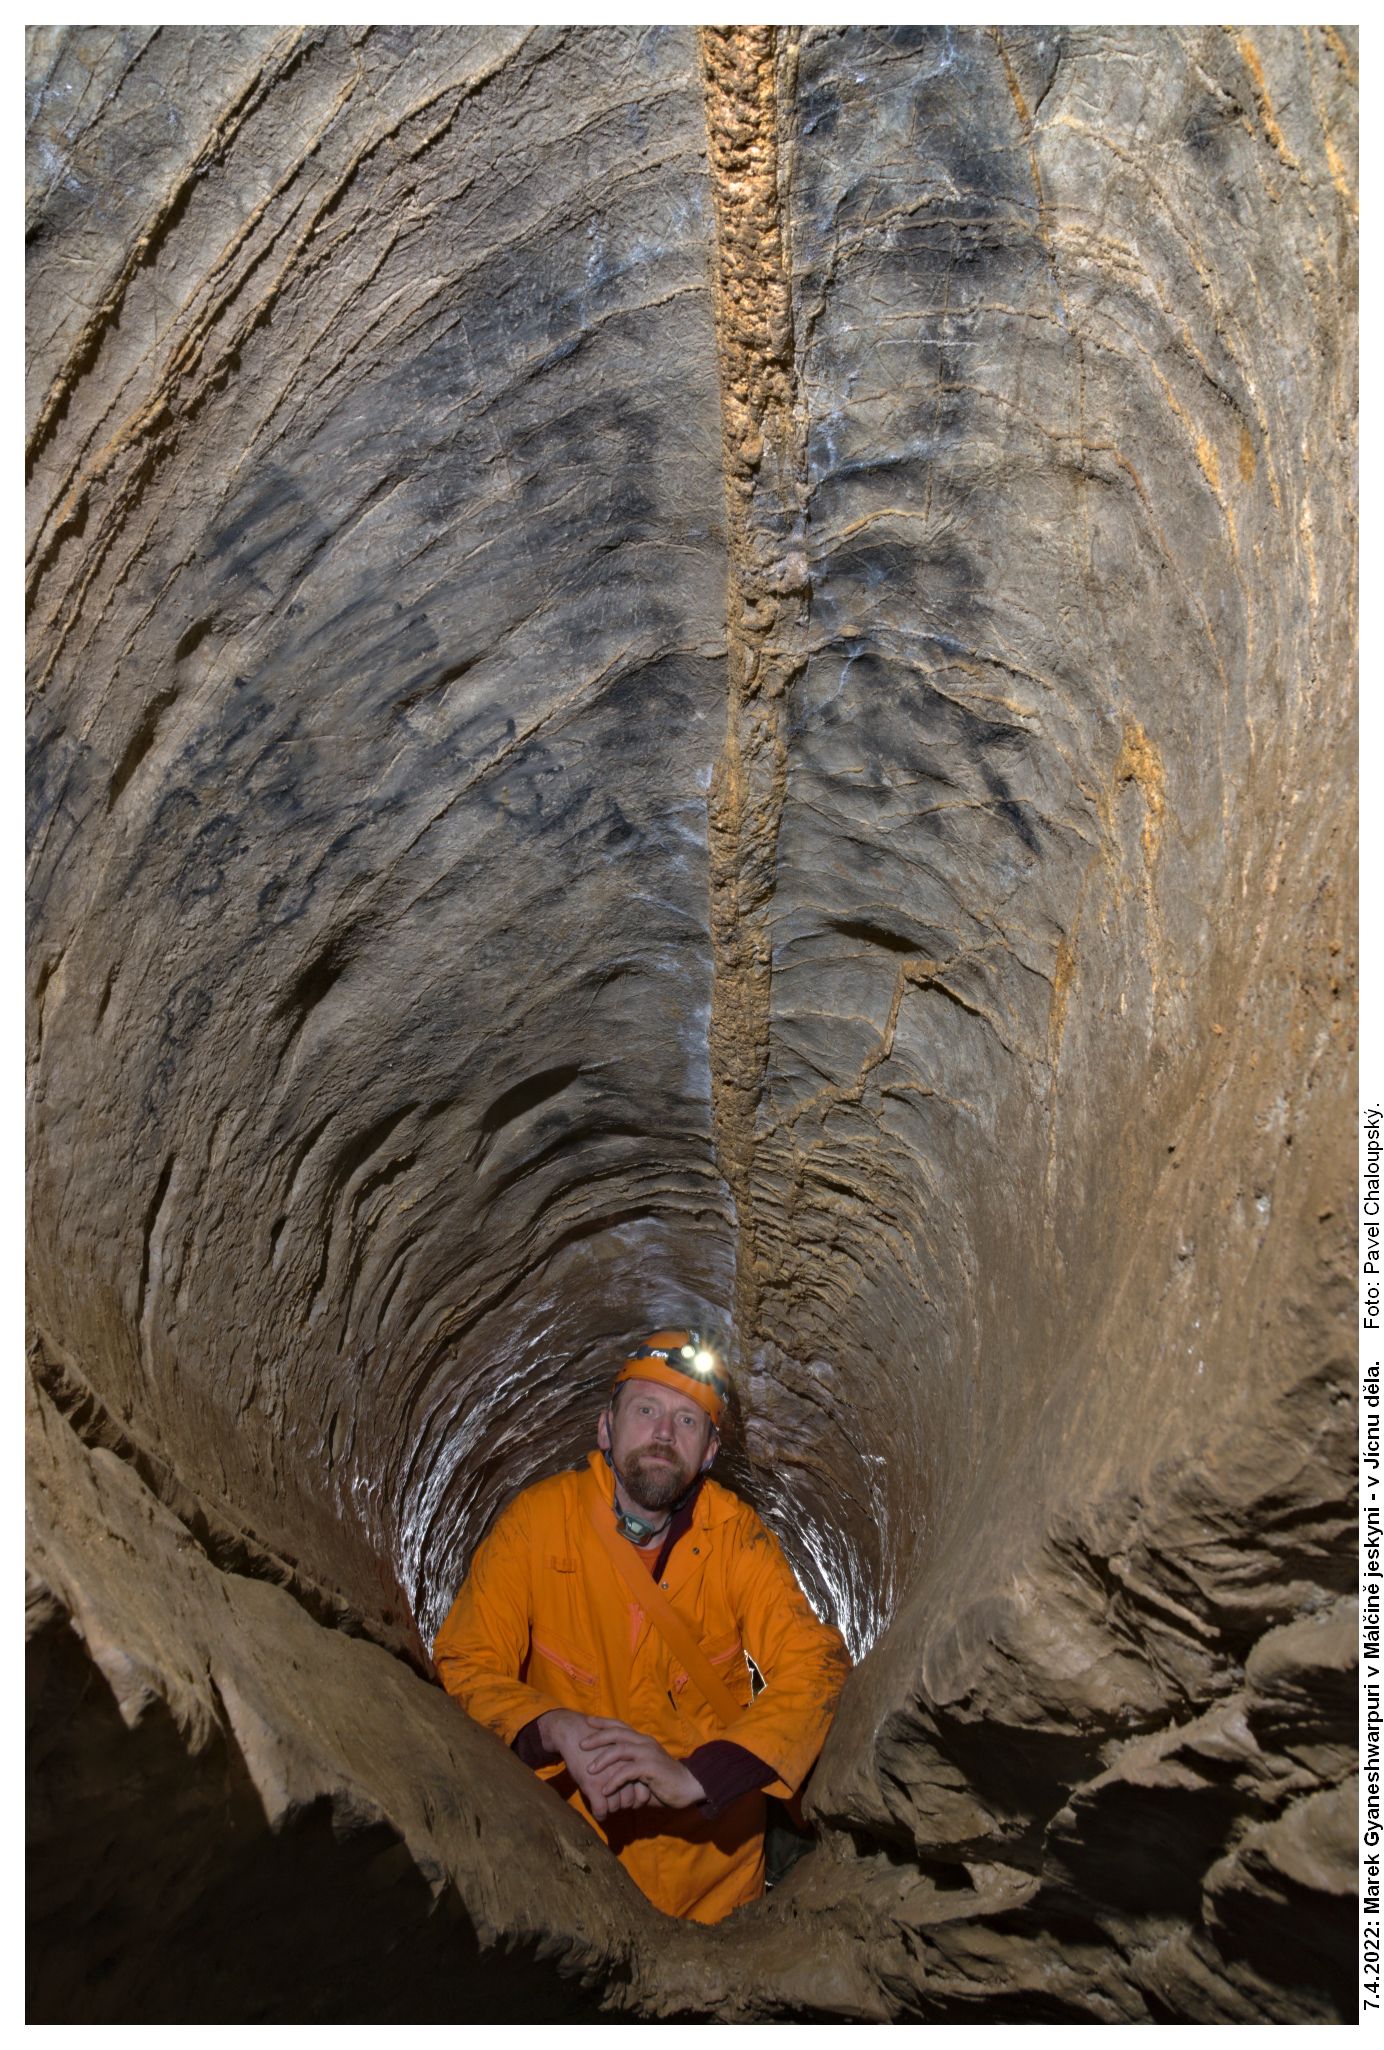 Swami Gyaneshwarpuri, Málčina jeskyně, foto: Pavel Chaloupský.